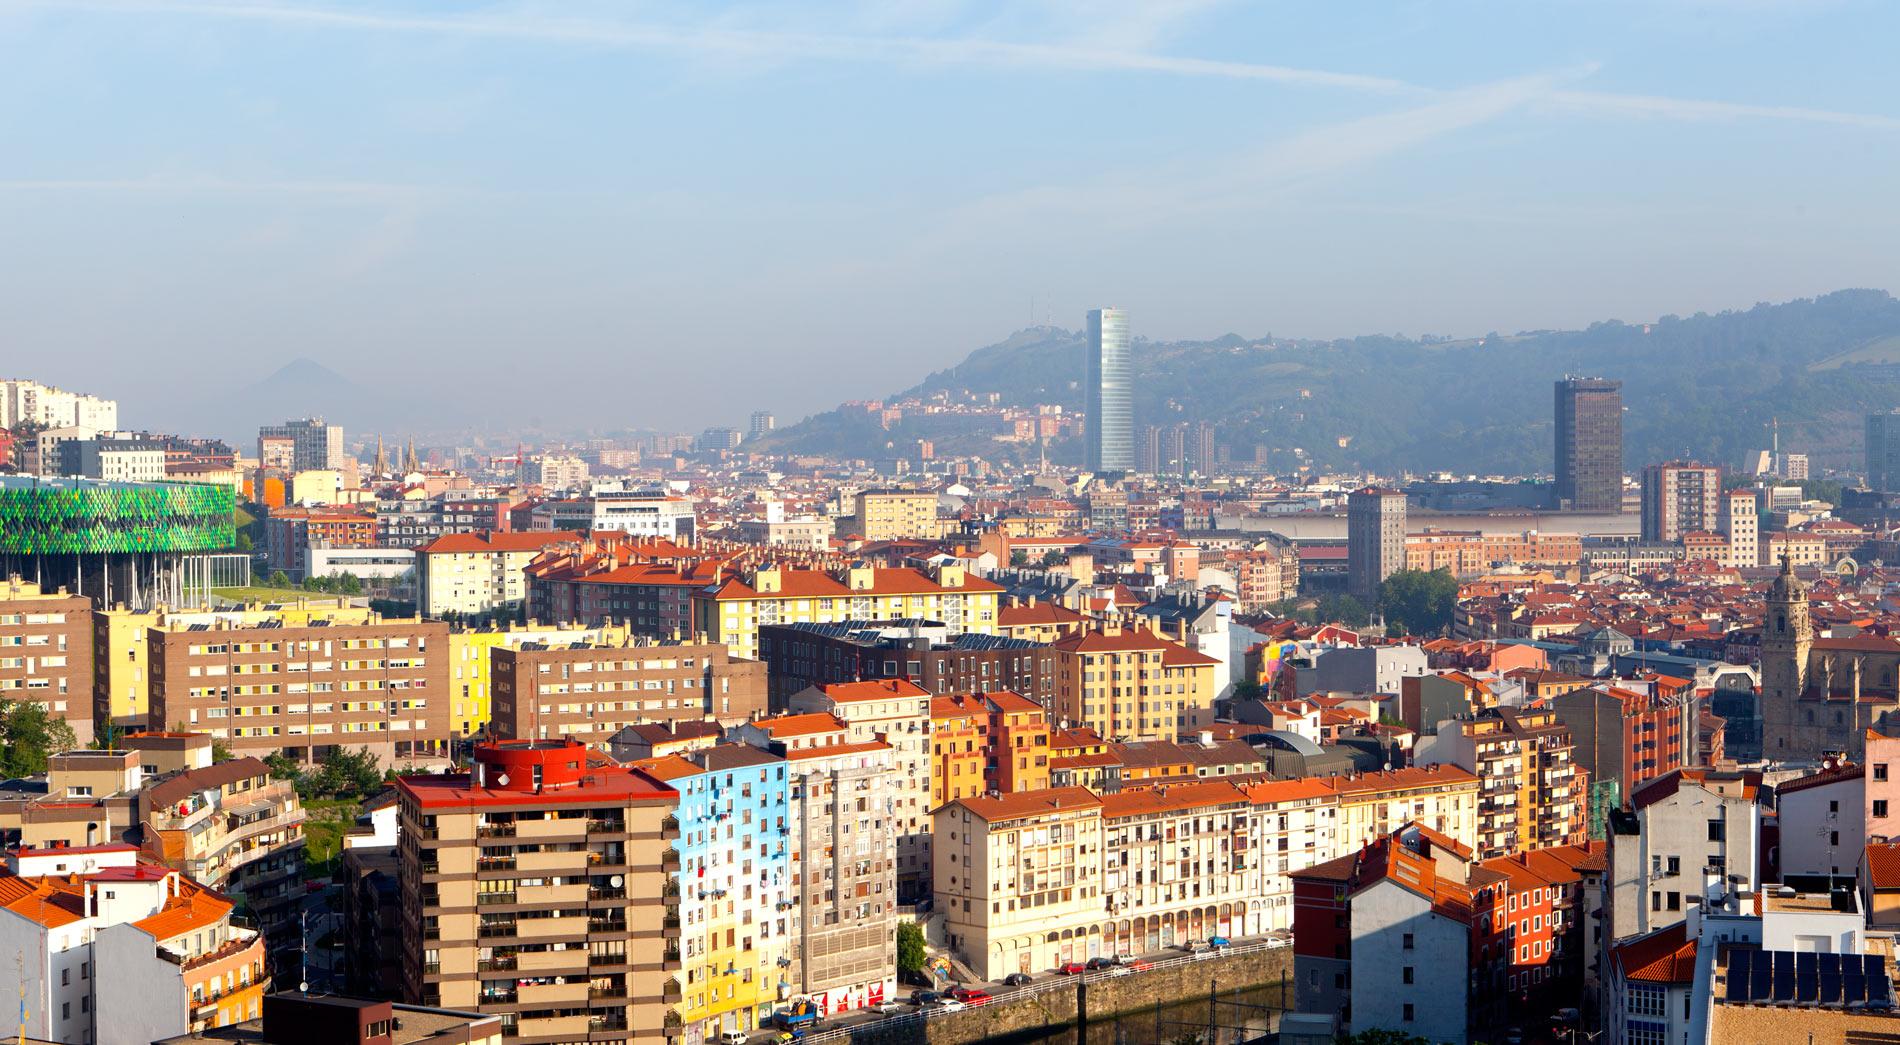 Hotel Gran Bilbao Exterior foto